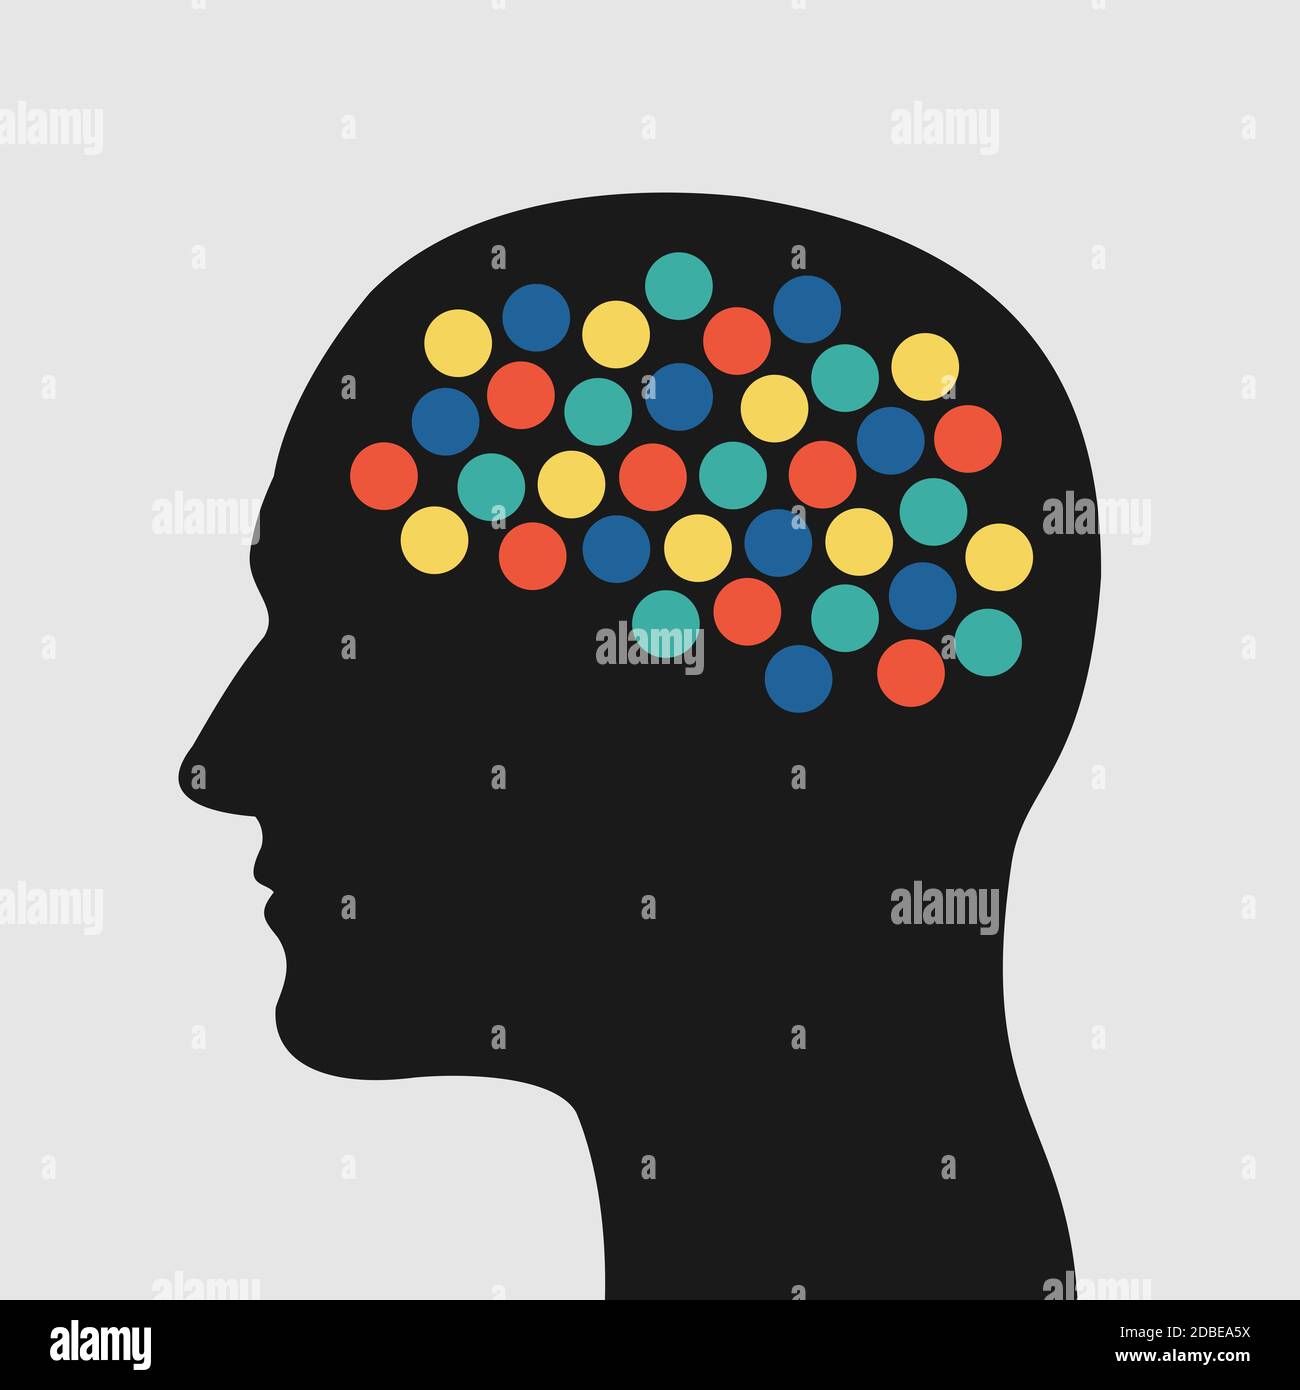 Attività cerebrale - puntini colorati e punti nella testa come metafora della creatività, del pensiero iperattivo, del disturbo mentale e della mente caotica. Illusione vettoriale Foto Stock